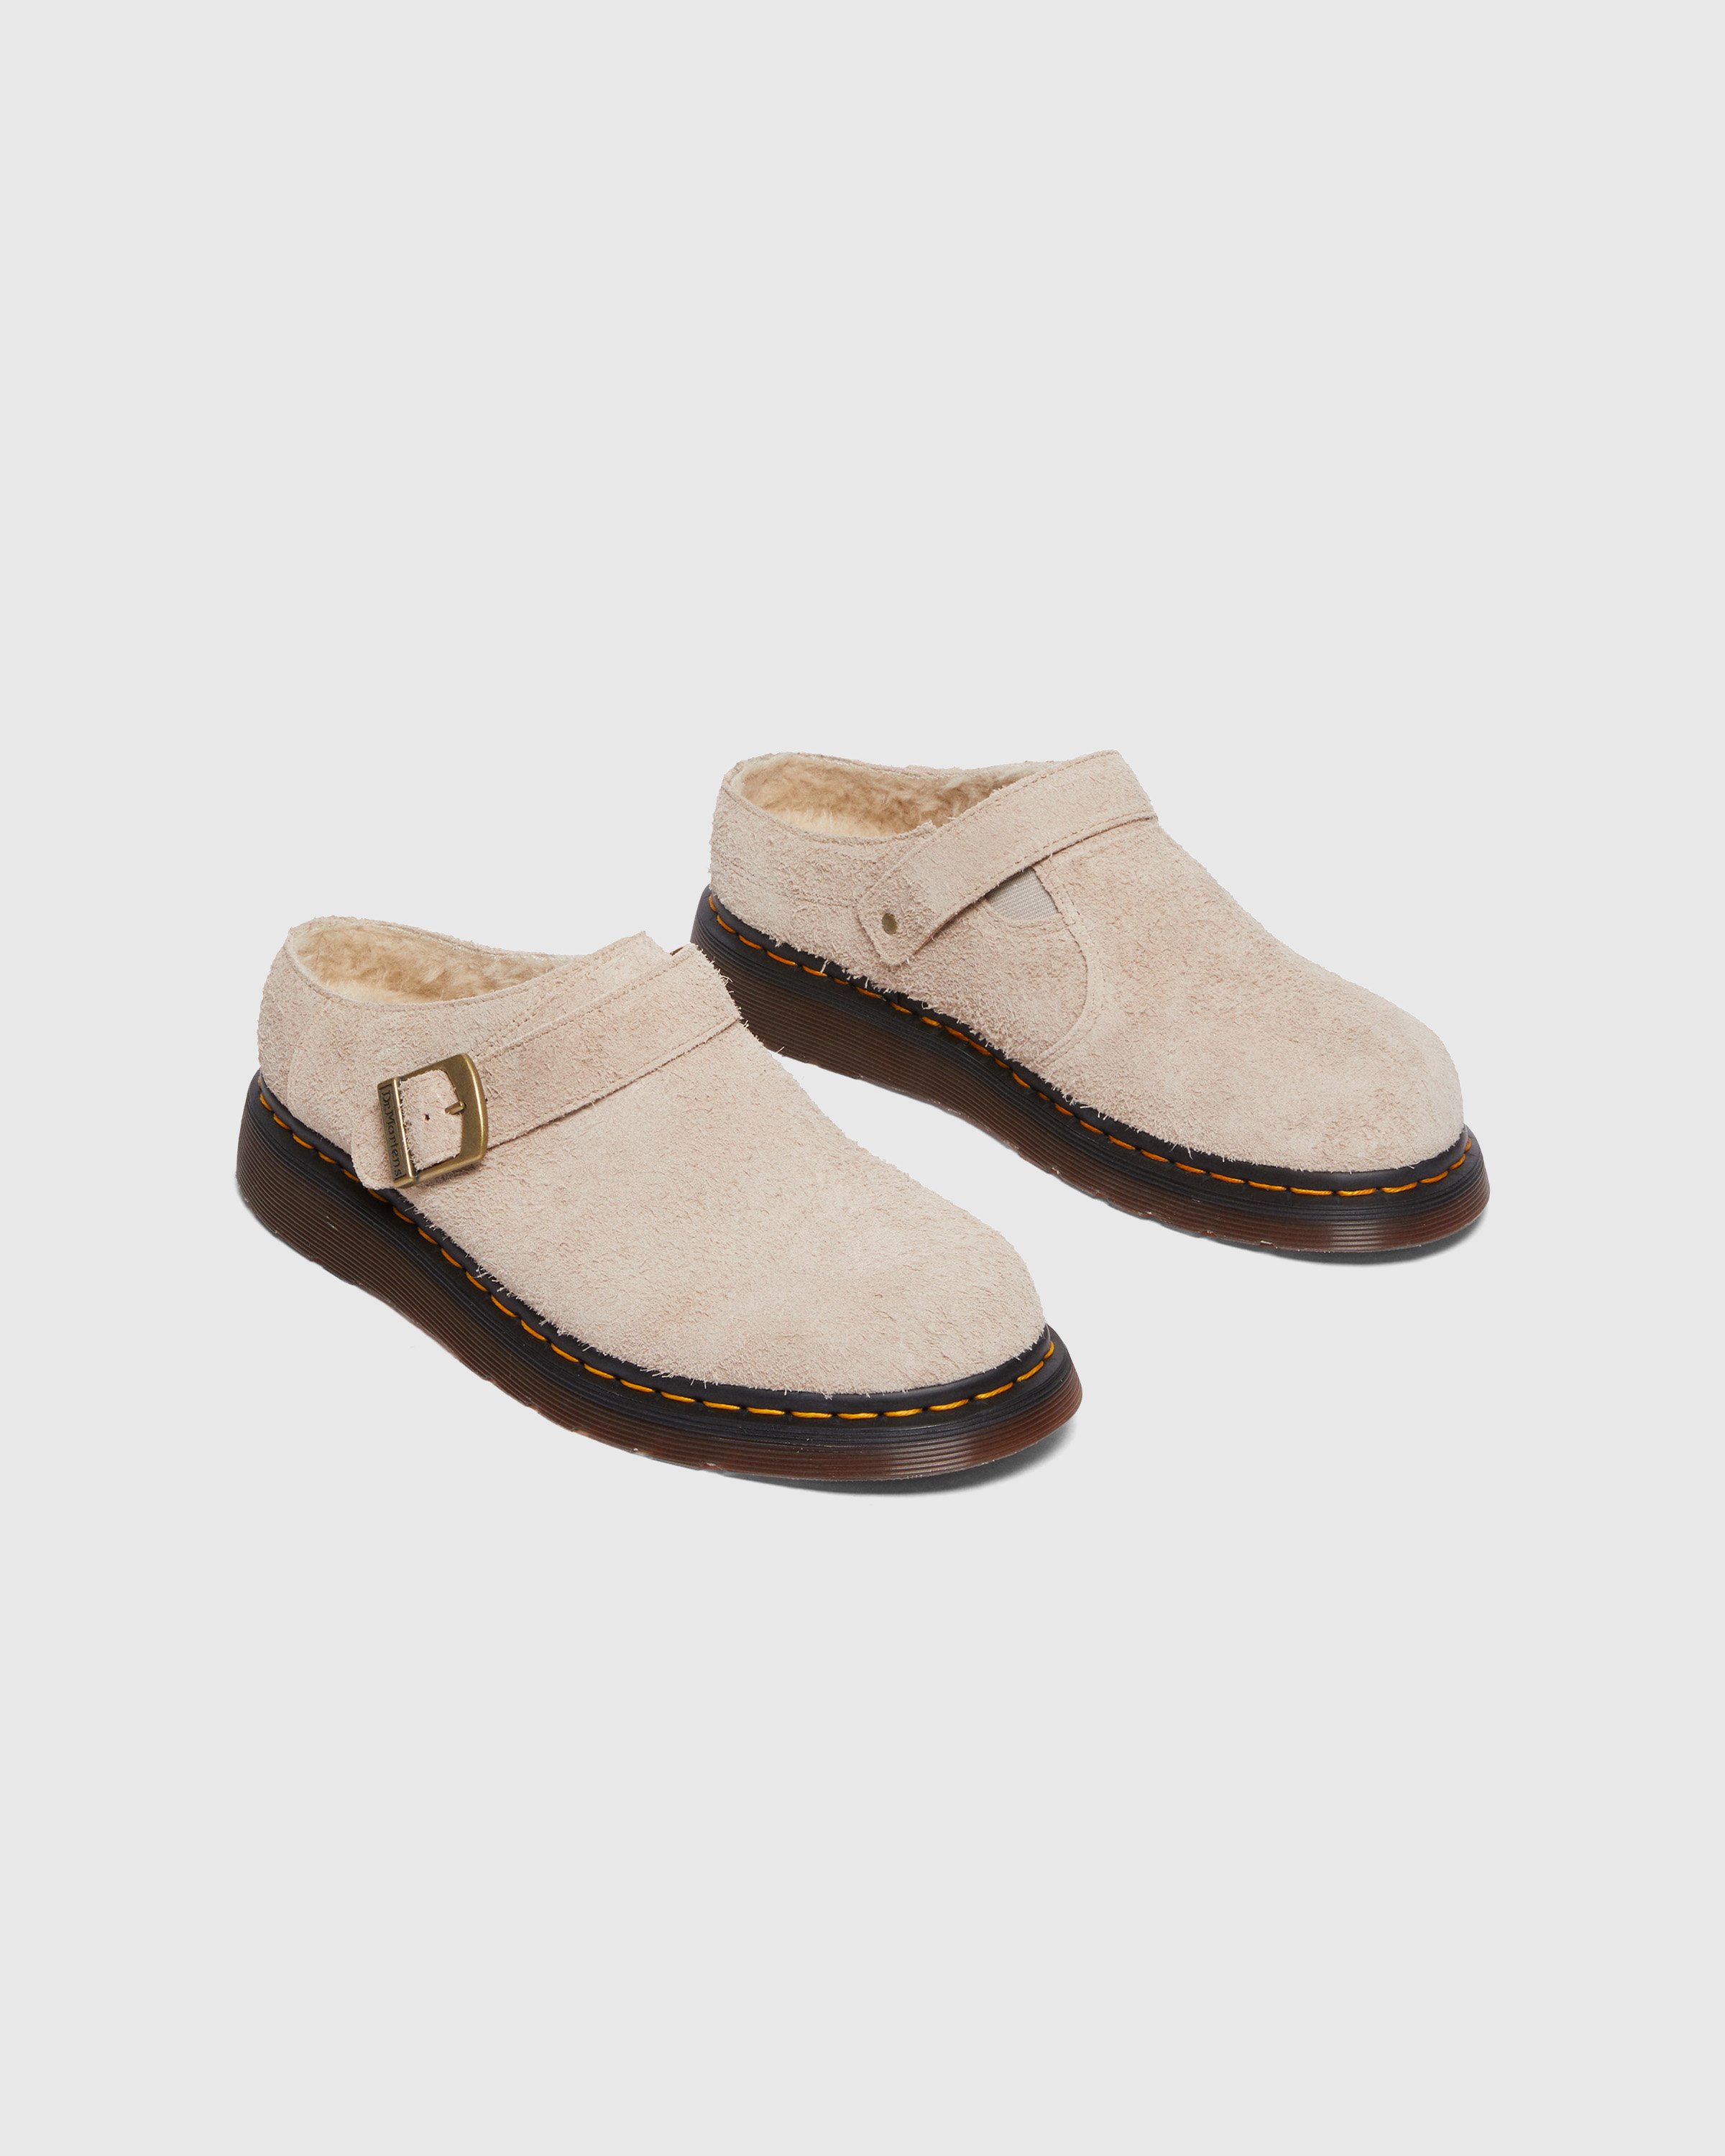 Dr. Martens - Isham Vintage Taupe Long Napped Suede - Footwear - Grey - Image 2